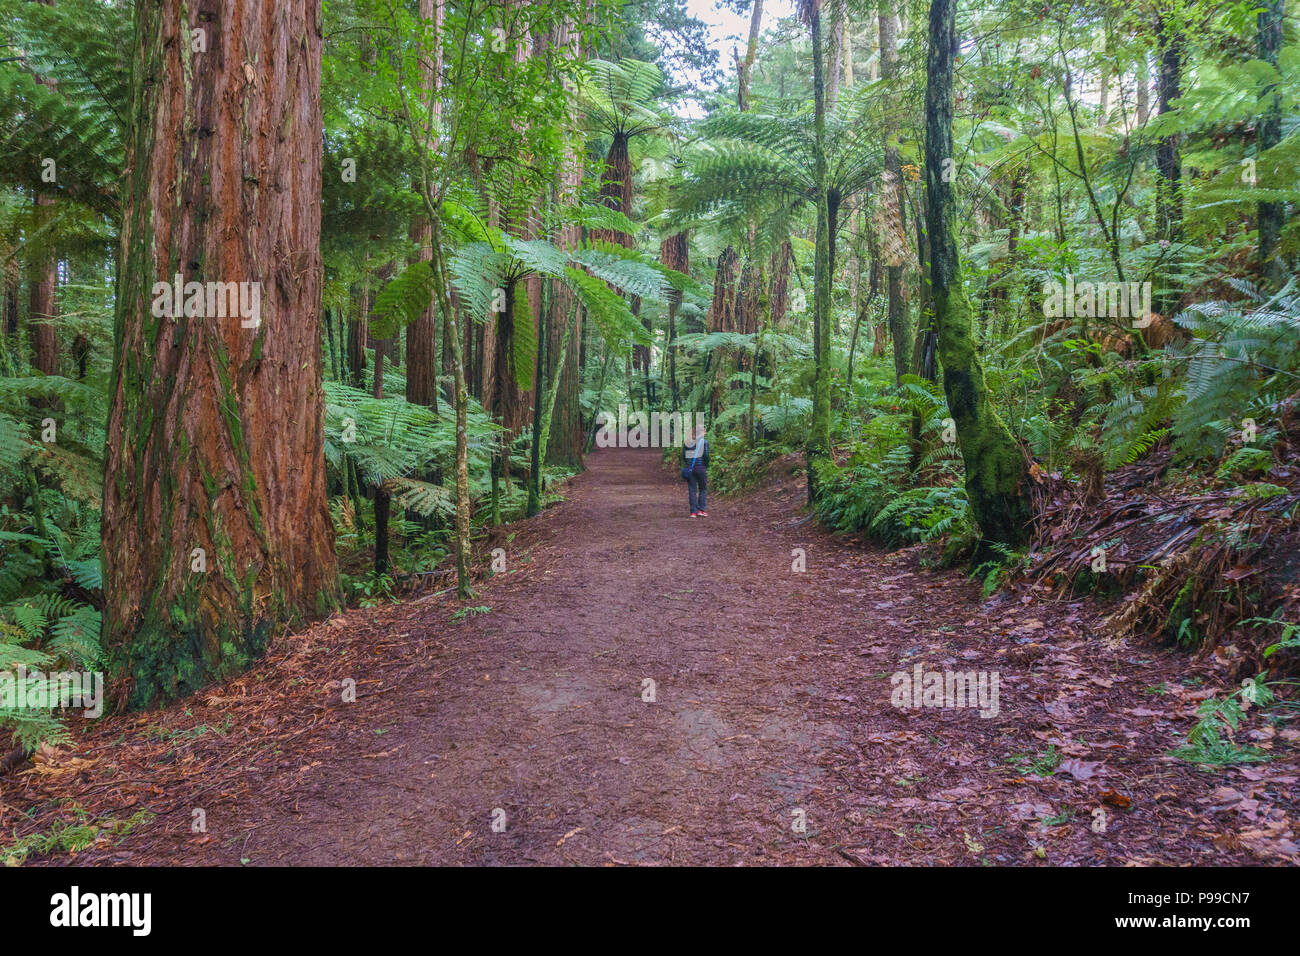 Redwoods - Whakarewarewa foresta, vicino a Rotorua, Isola del nord, Nuova Zelanda. La foresta è famoso per la magnifica stand della costa Californiana Redwoods. Foto Stock